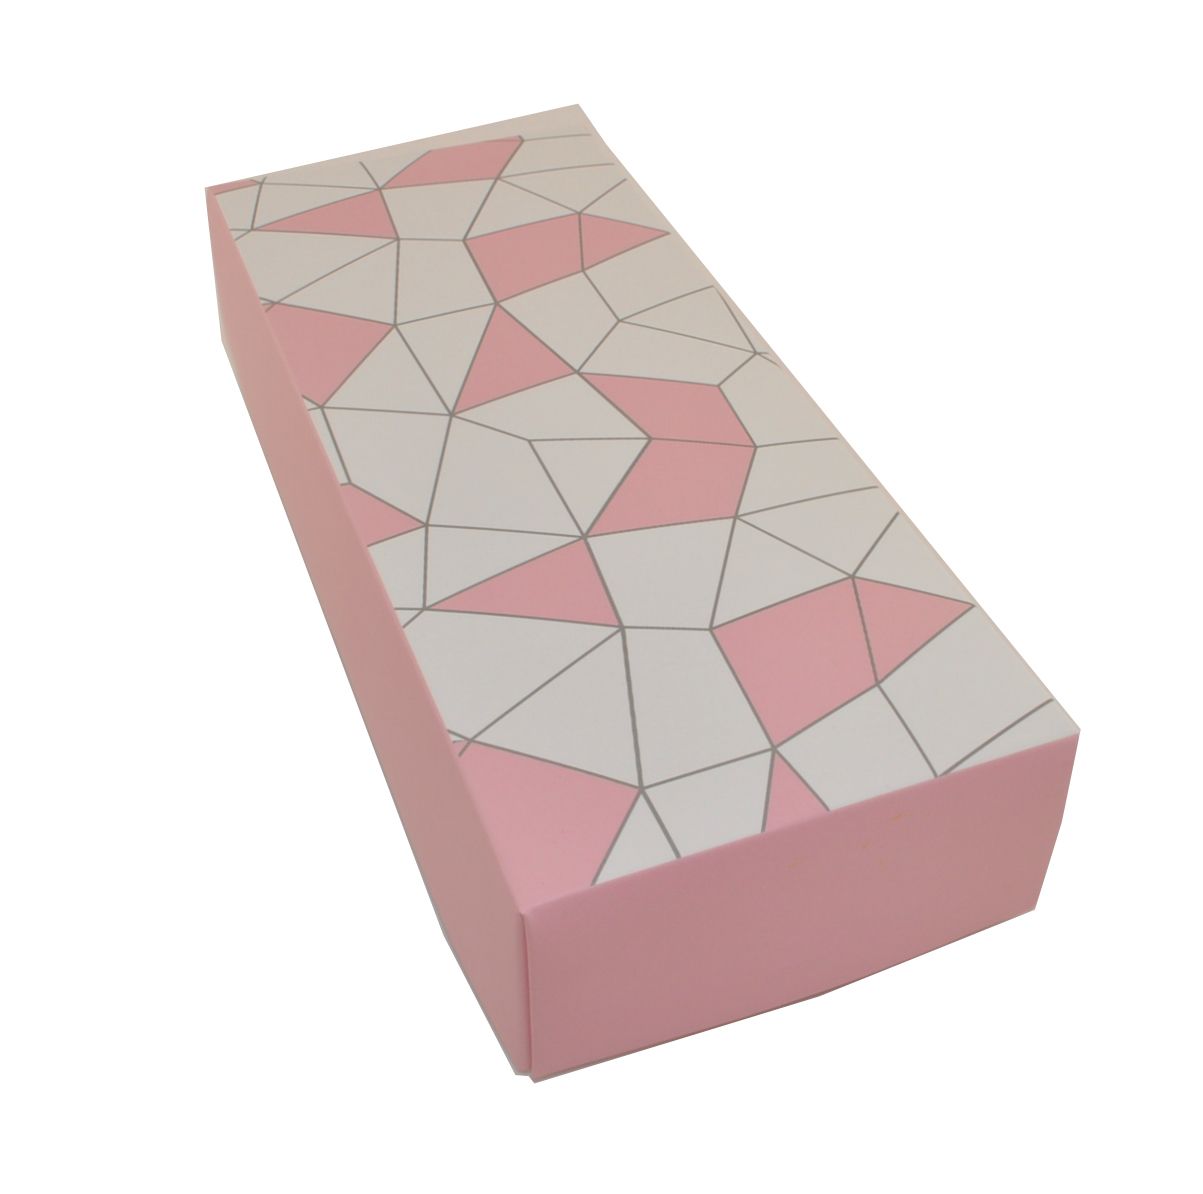 UP47 Коробка для носков розовая с мозайкой описание: Состав - Картон, Цвет - Розовый, белый, Размеры - ШхВхТ: 9,5 см х 22,5 см х 4,5 см, Вес - , Стоимость - 250 руб руб.;